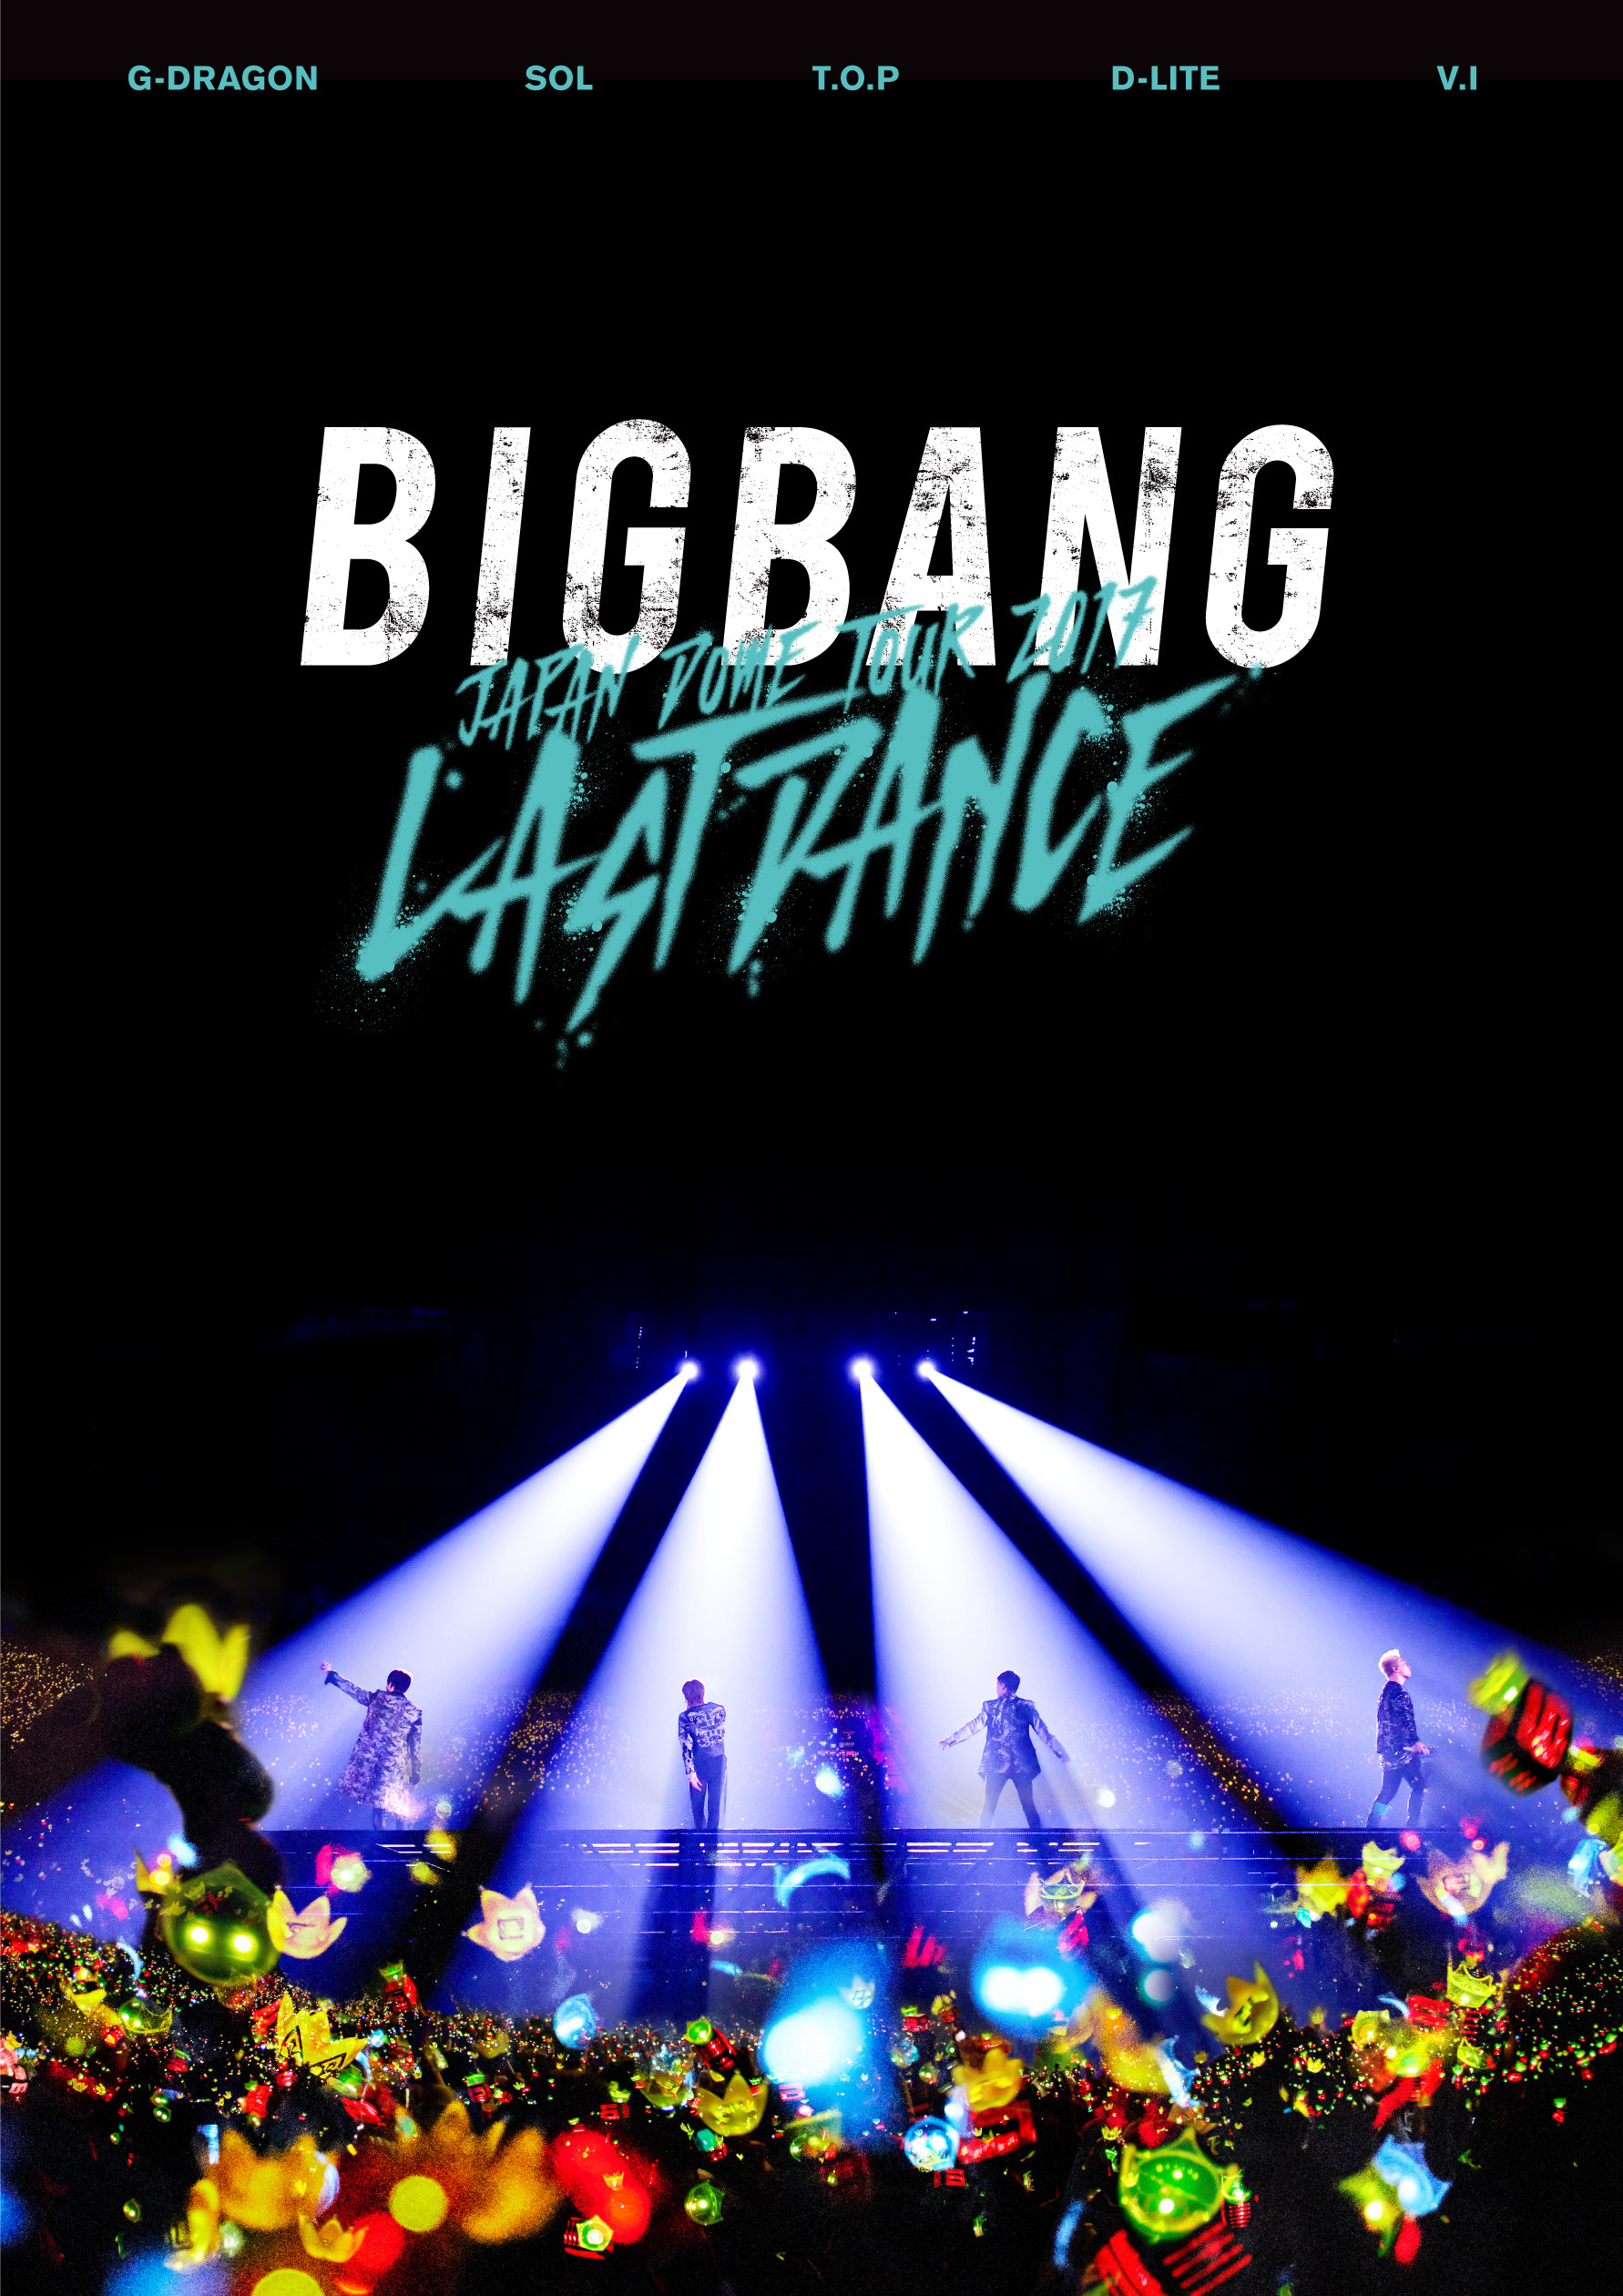 『BIGBANG JAPAN DOME TOUR 2017 -LAST DANCE-』